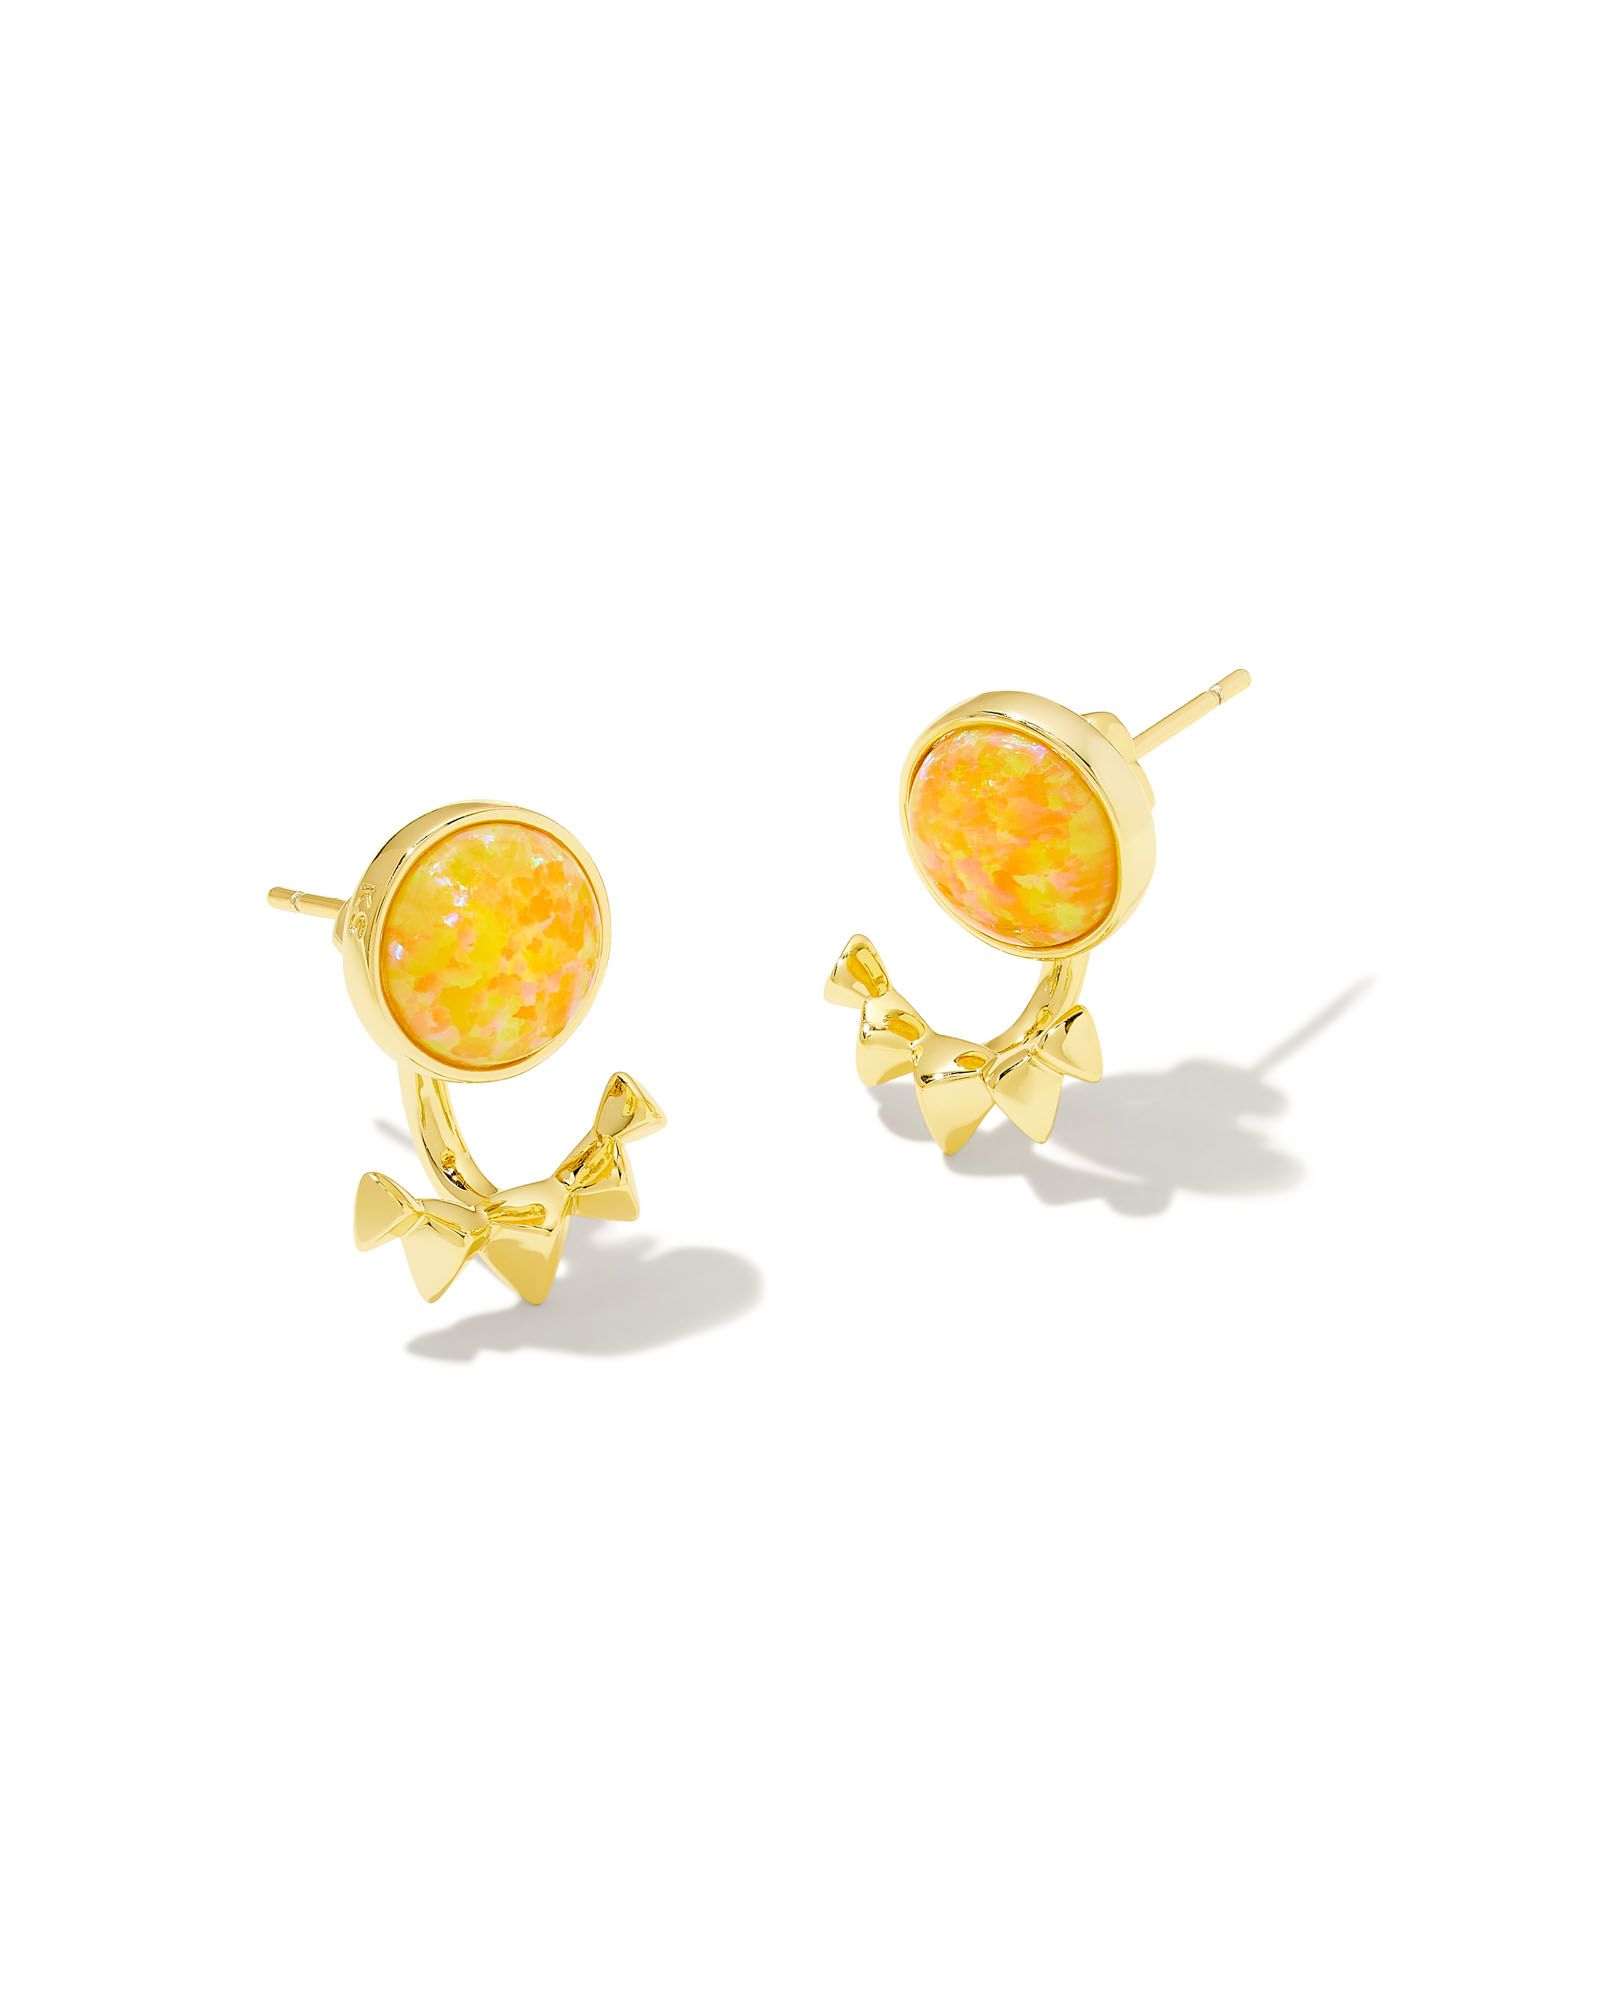 Sienna Gold Ear Jacket Earrings in Citrus Kyocera Opal | Kendra Scott | Kendra Scott